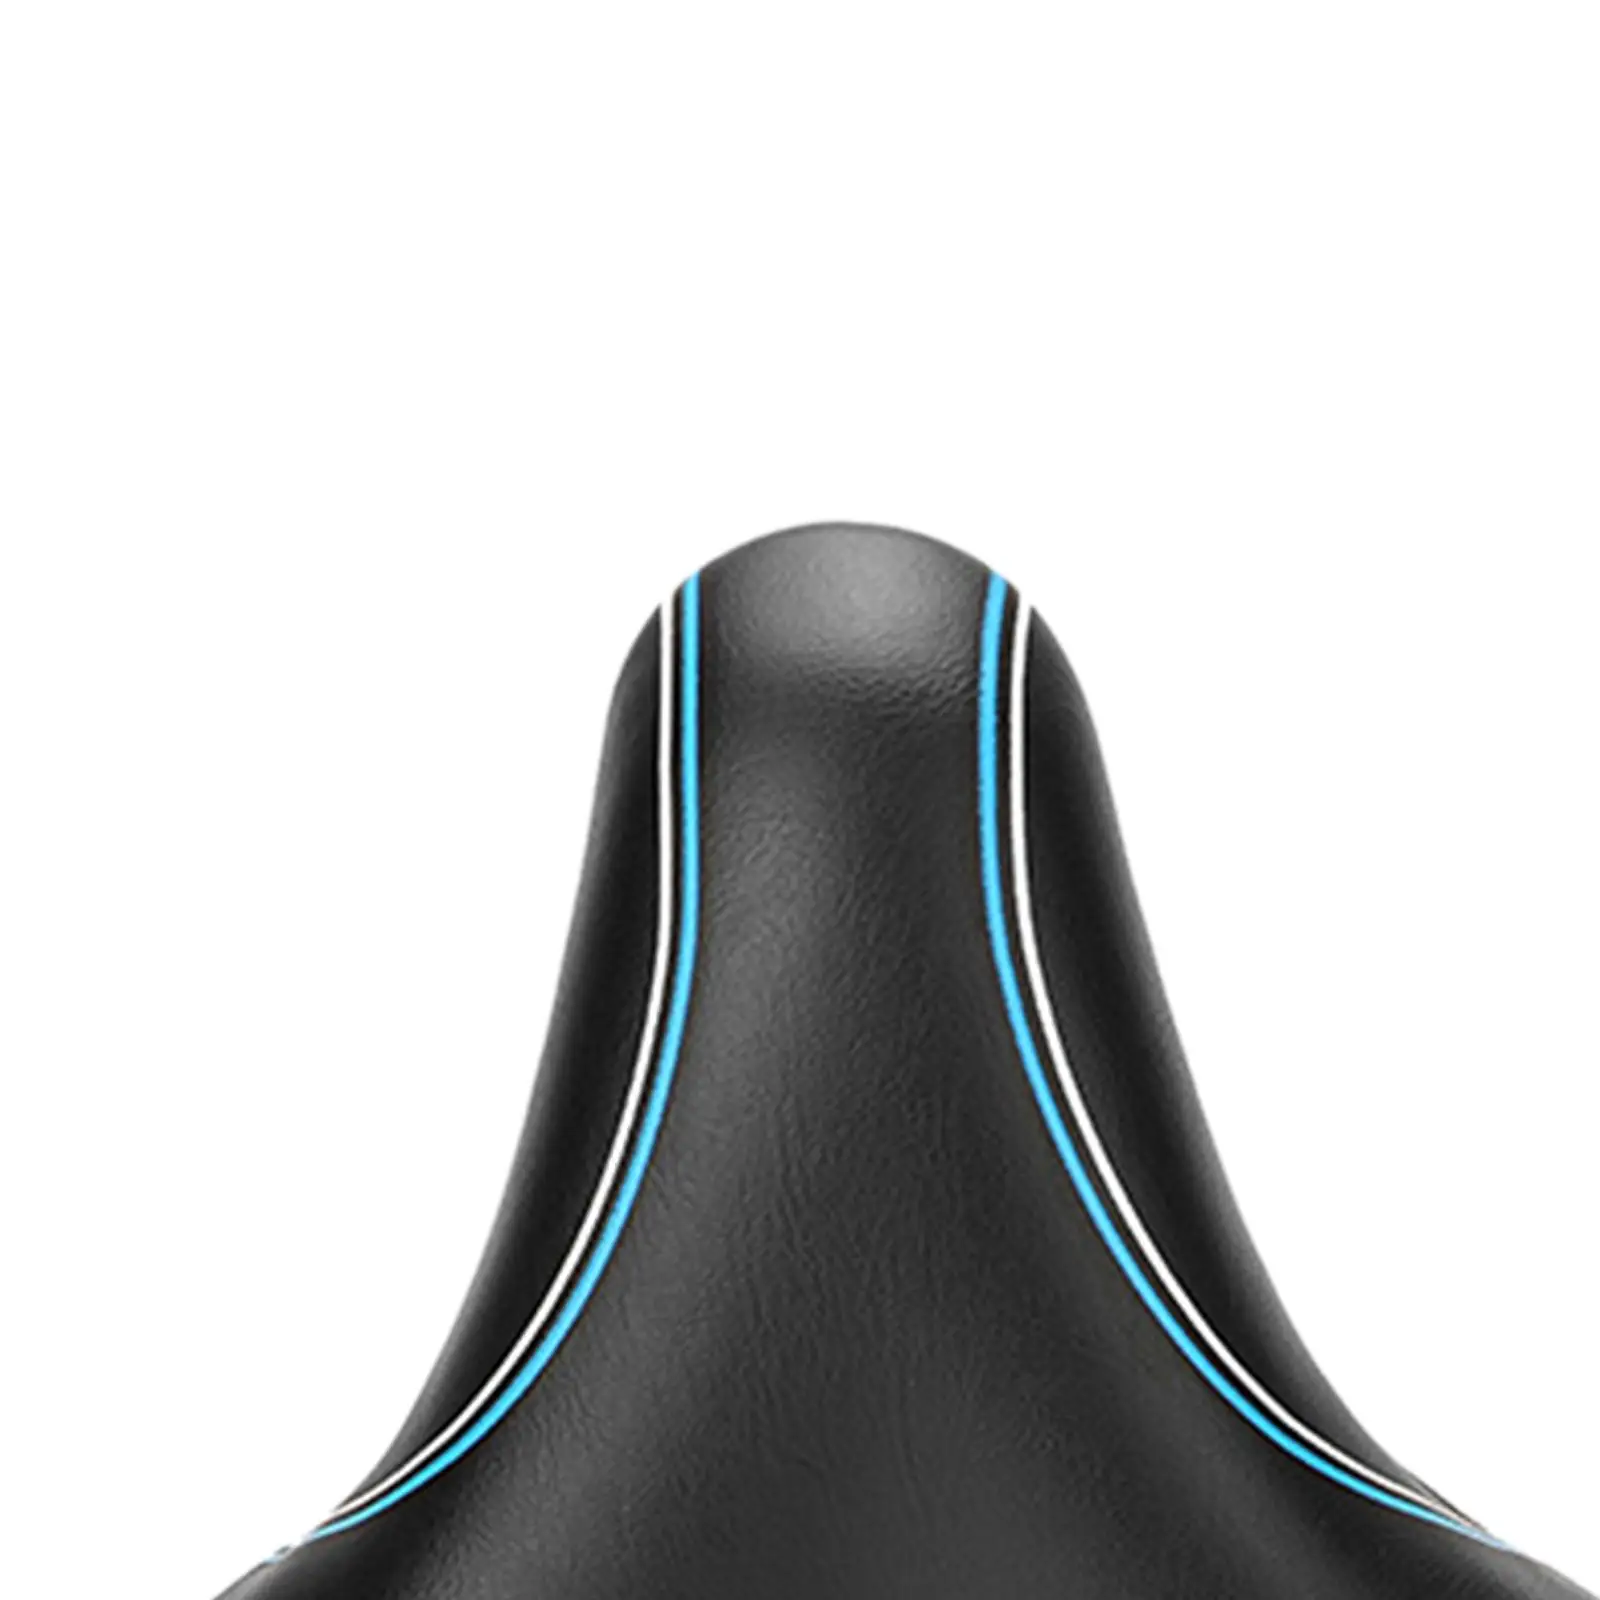  Seat W/ Storage Space Shockproof Waterproof Breathable Biking Seat